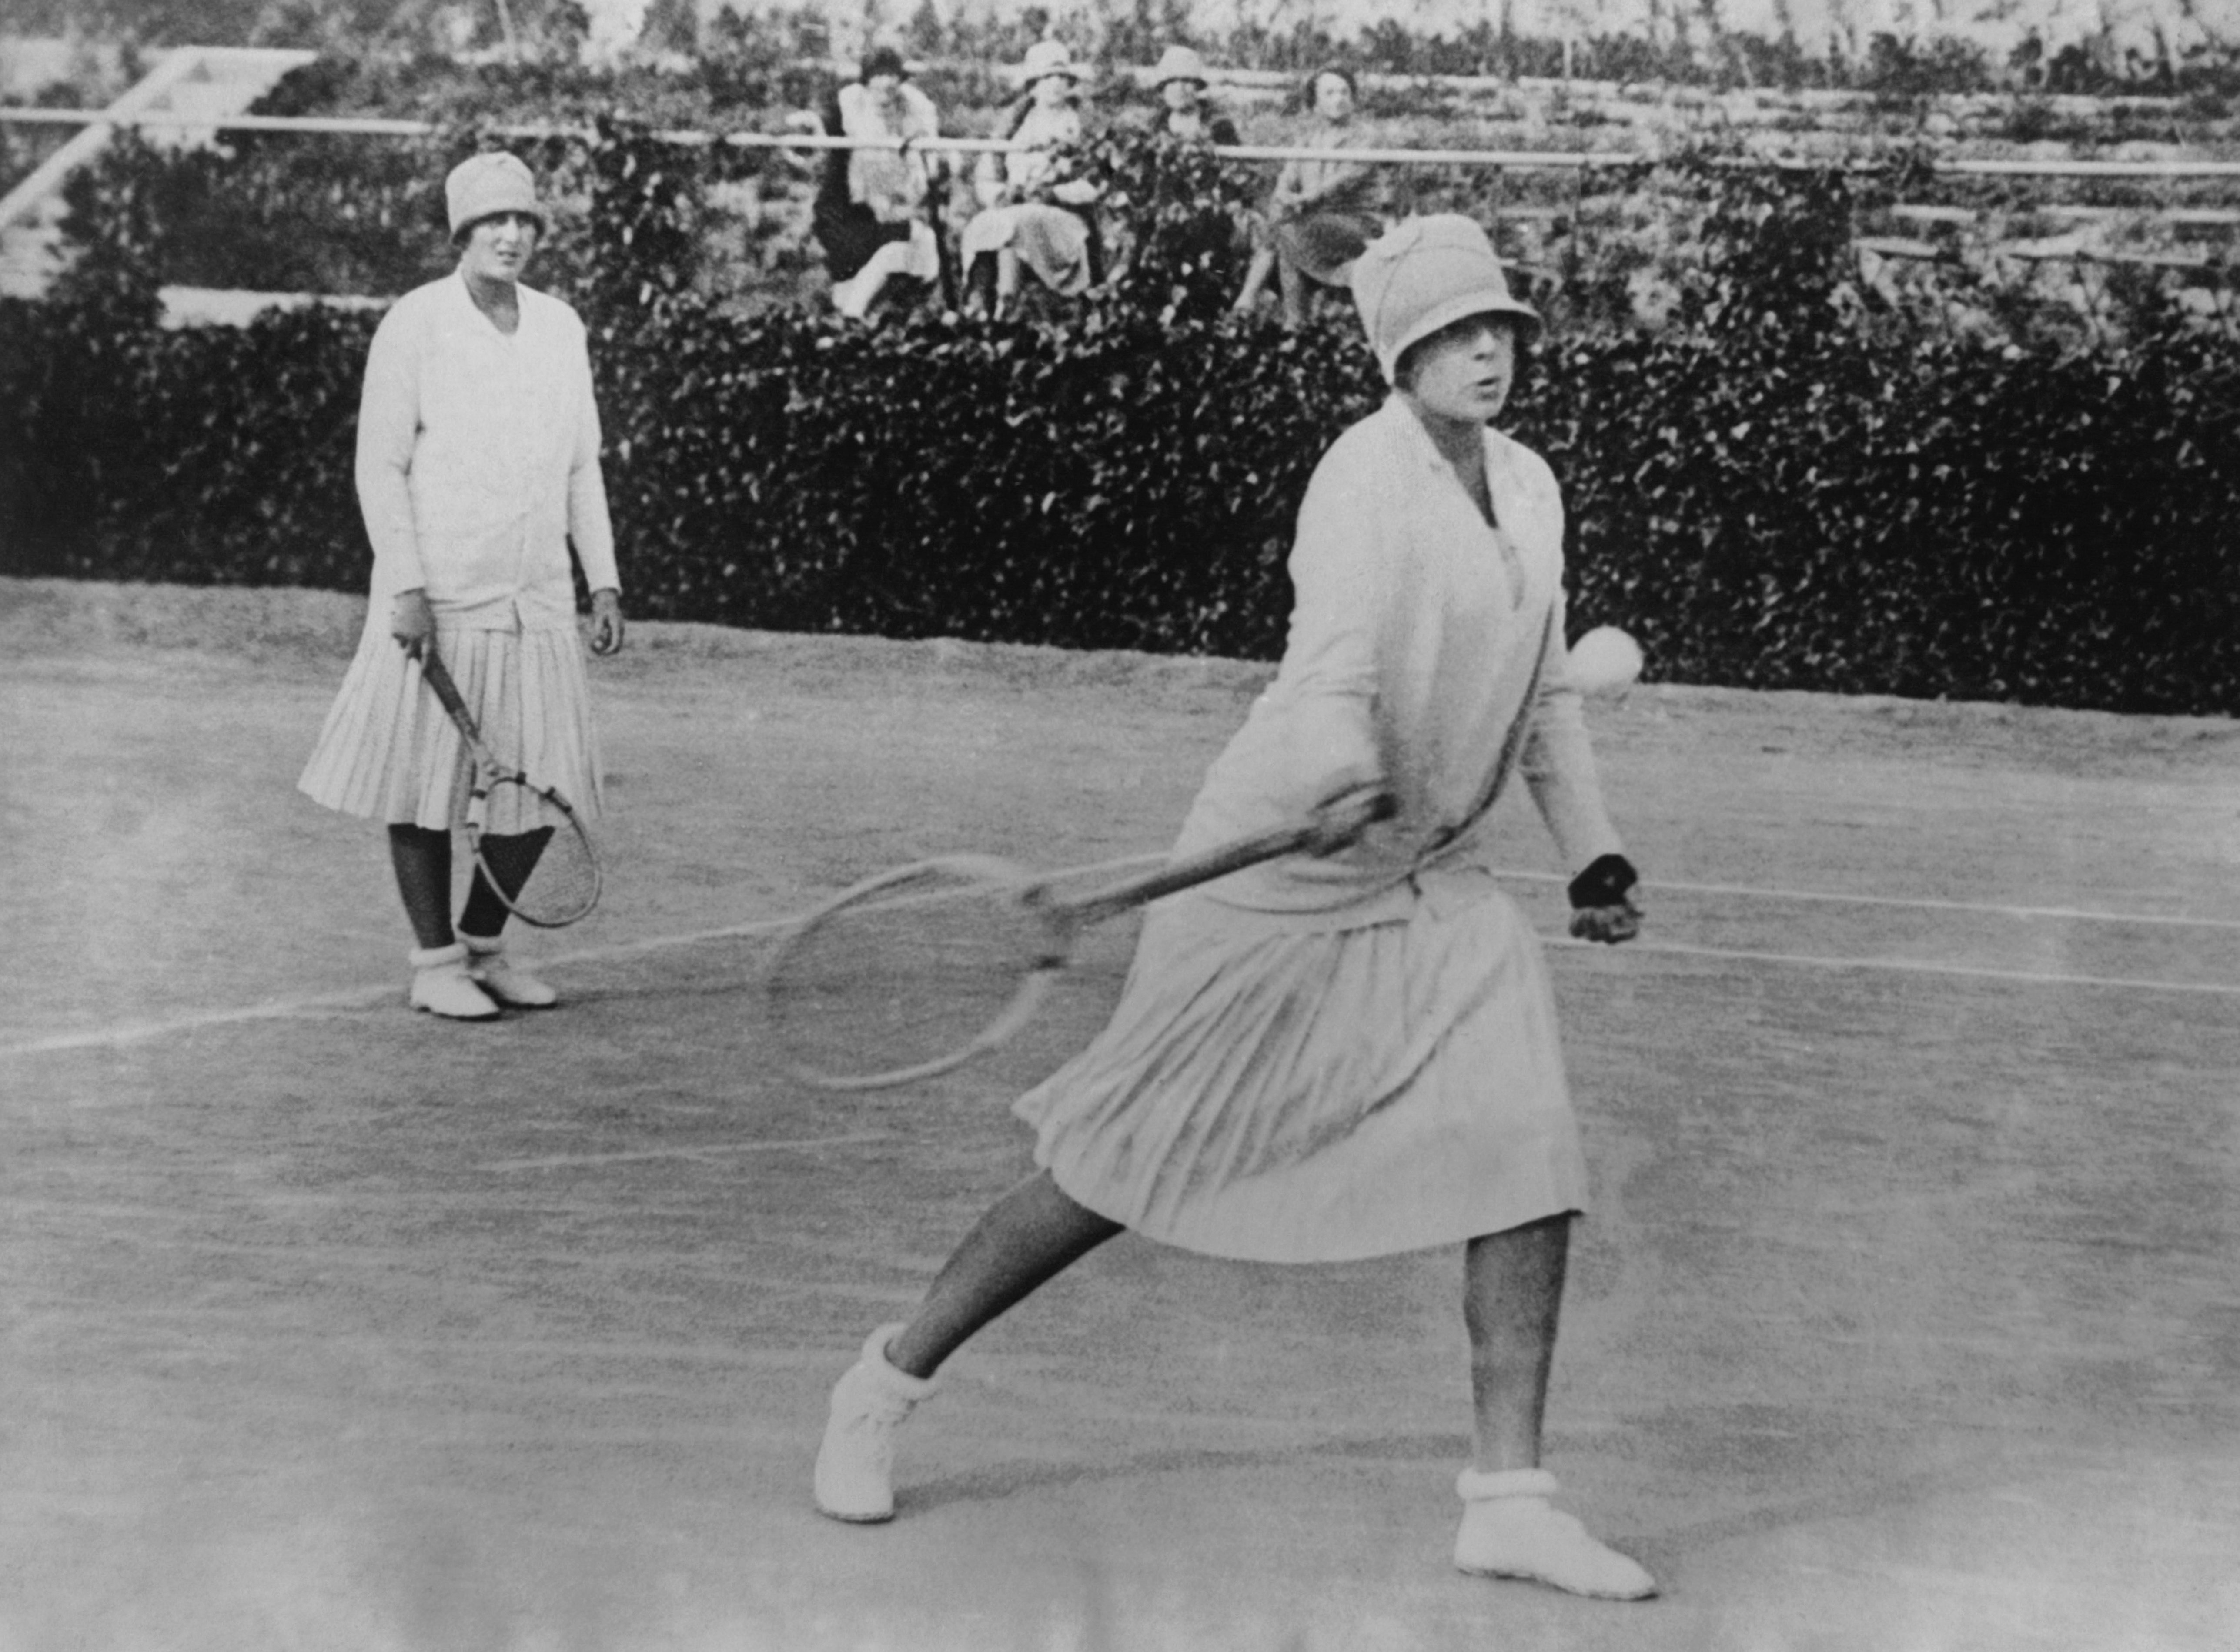 Las infantas Cristina y Beatriz en los Torneos de Tenis, alrededor del año 1920, en Madrid, España. | Foto: Getty Images